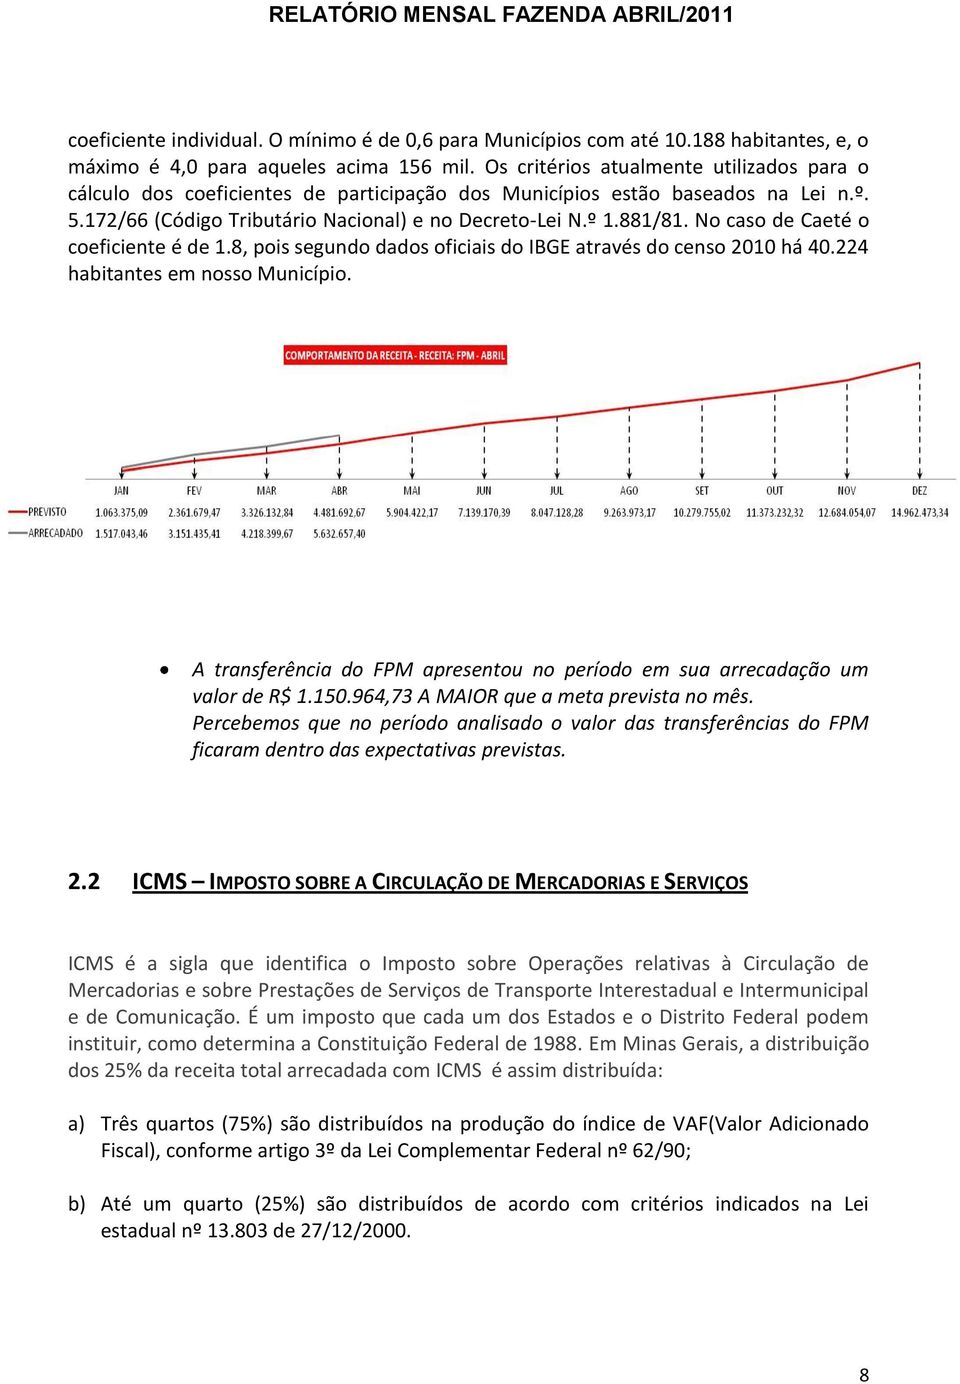 No caso de Caeté o coeficiente é de 1.8, pois segundo dados oficiais do IBGE através do censo 2010 há 40.224 habitantes em nosso Município.